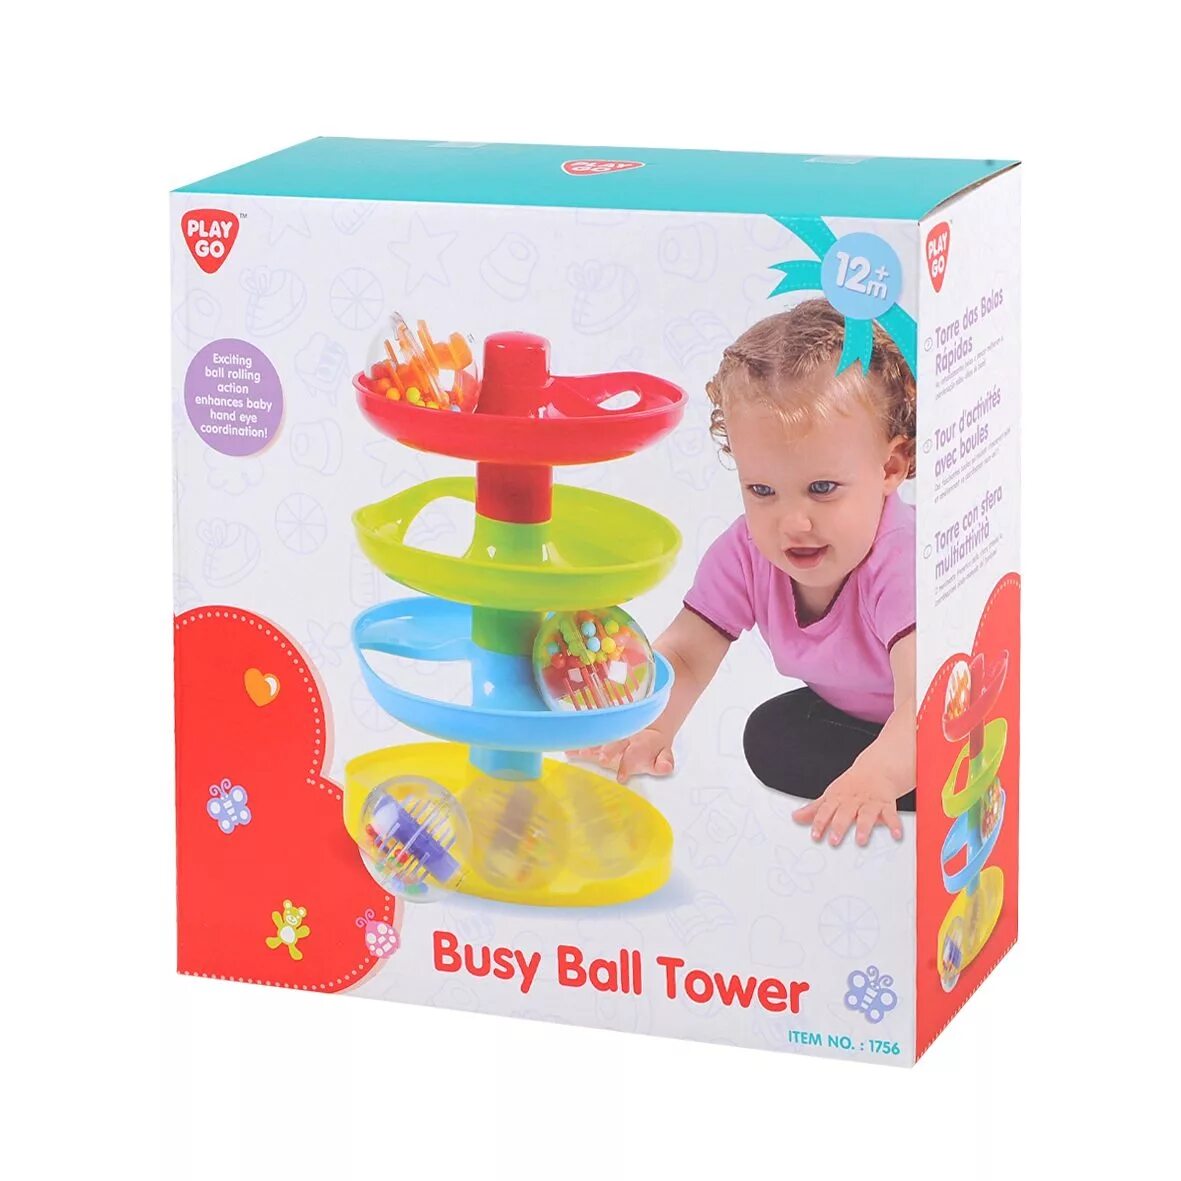 Шаре плей. PLAYGO игрушки для детей. Башня PLAYGO. Башня с шариками игрушка для детей. Игрушка Лабиринт с шариком.